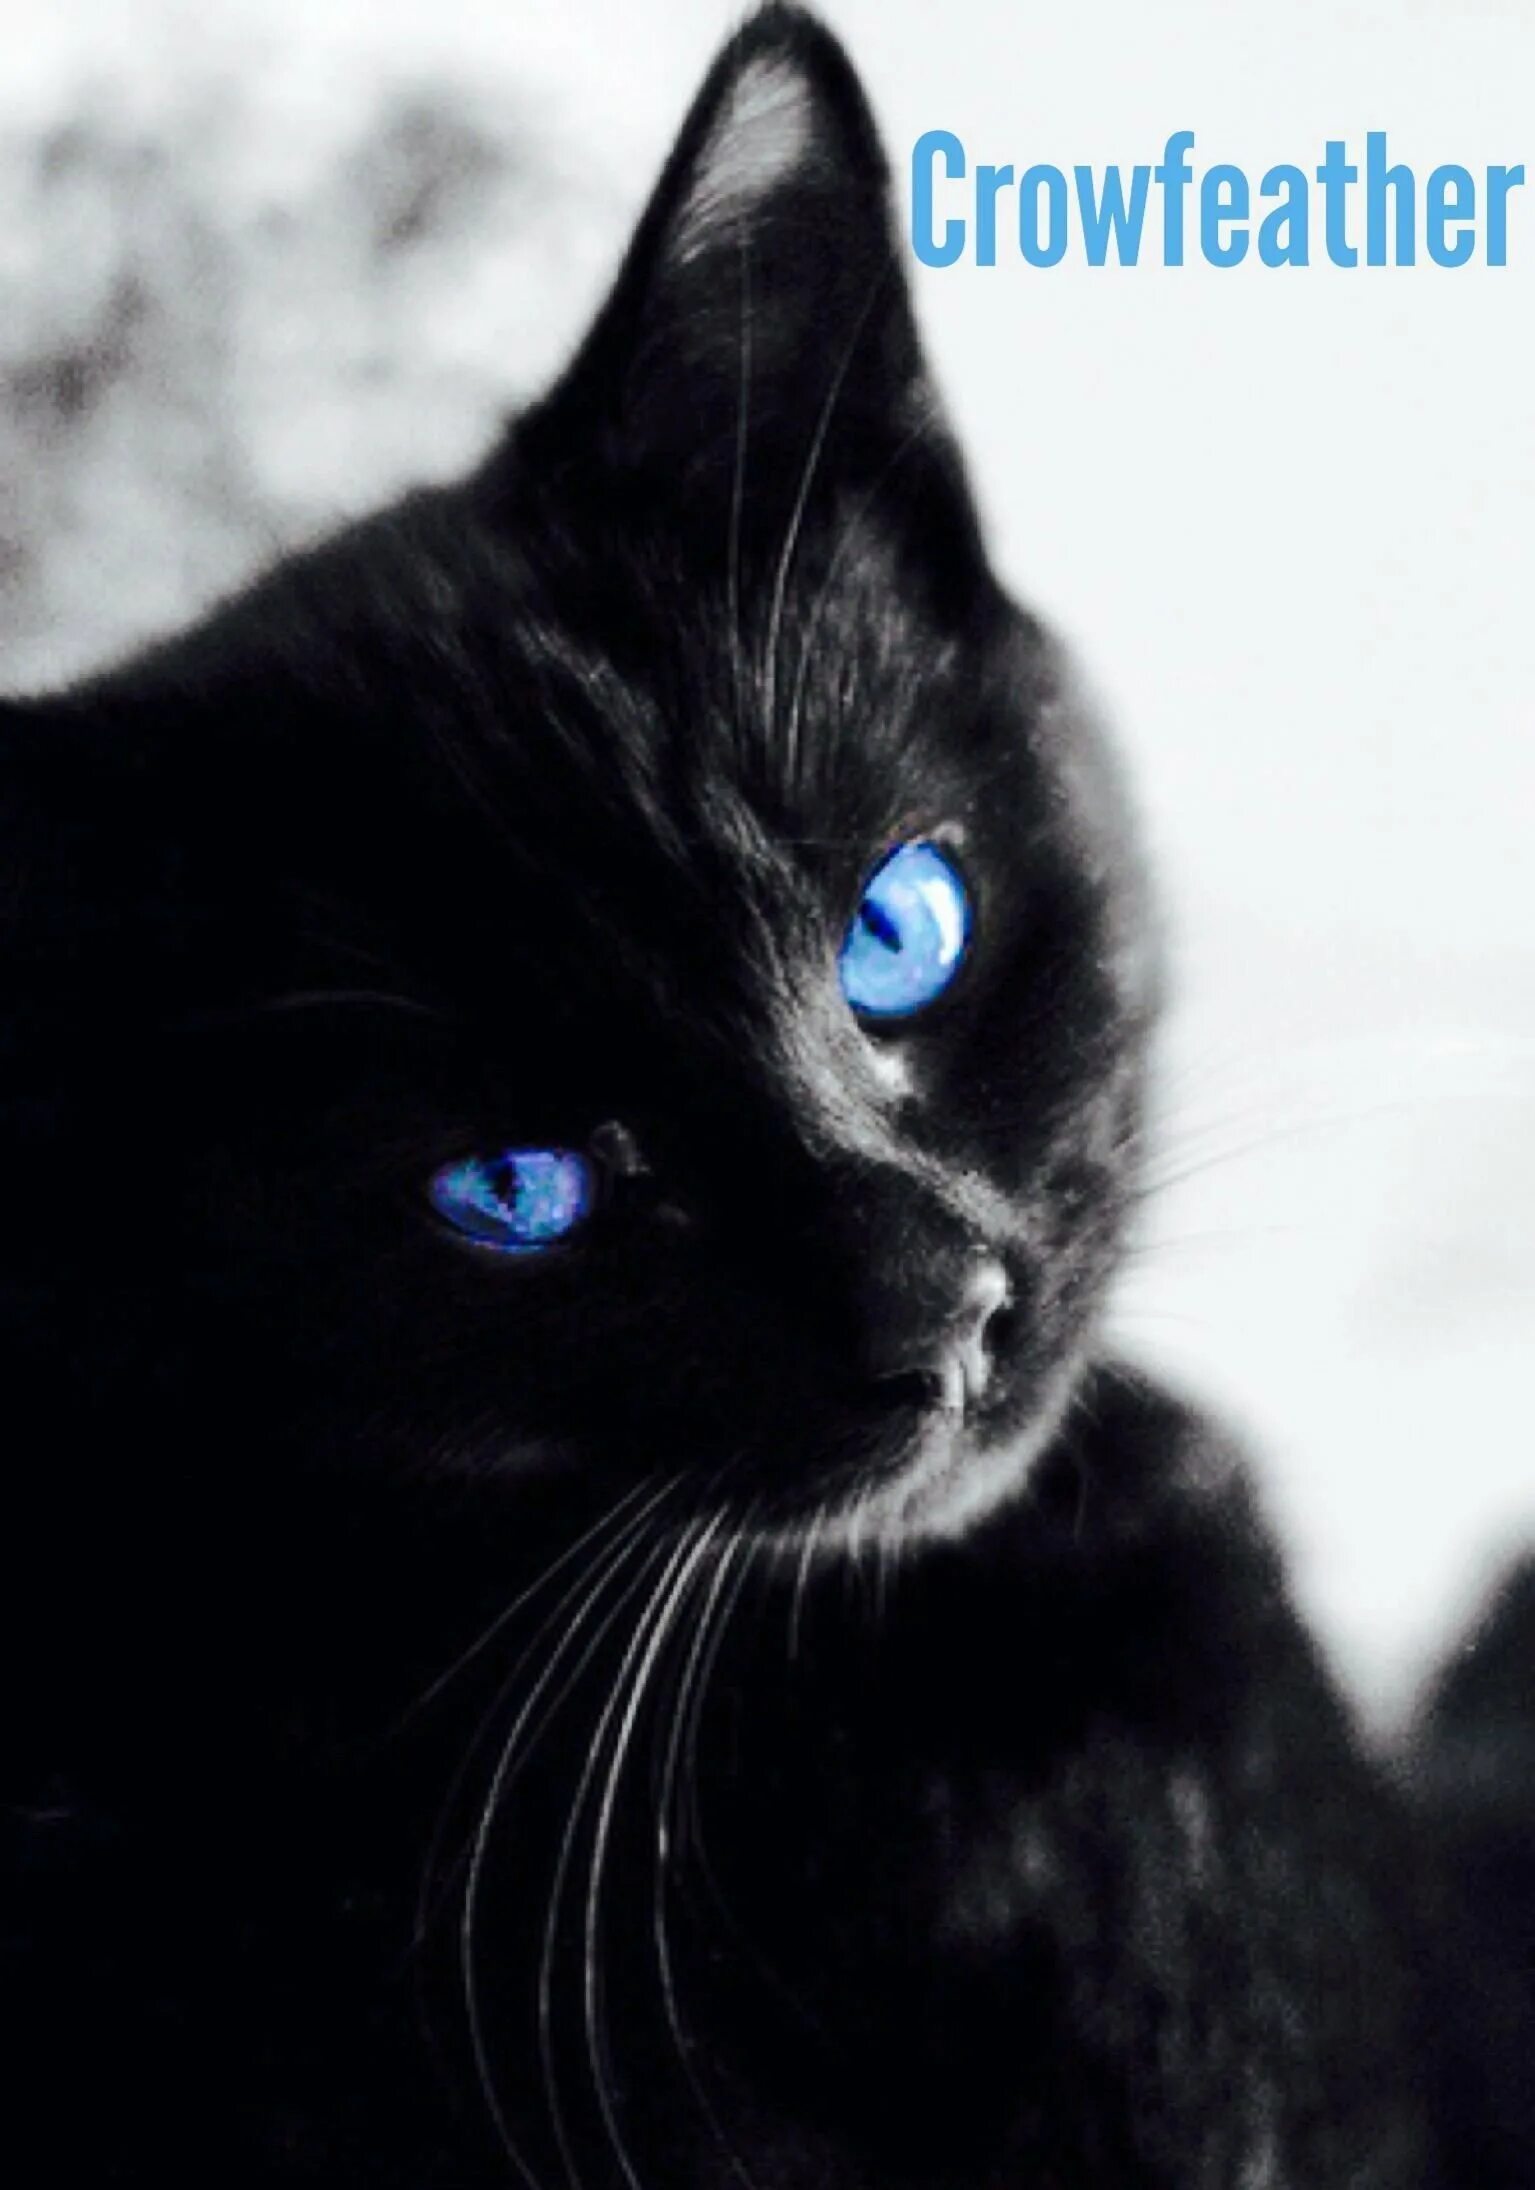 Охос азулес кошка черная. Охос азулес черный с голубыми глазами. Охос азулес кошка с голубыми глазами черная. Охос азулес рыжий. Черная глазая